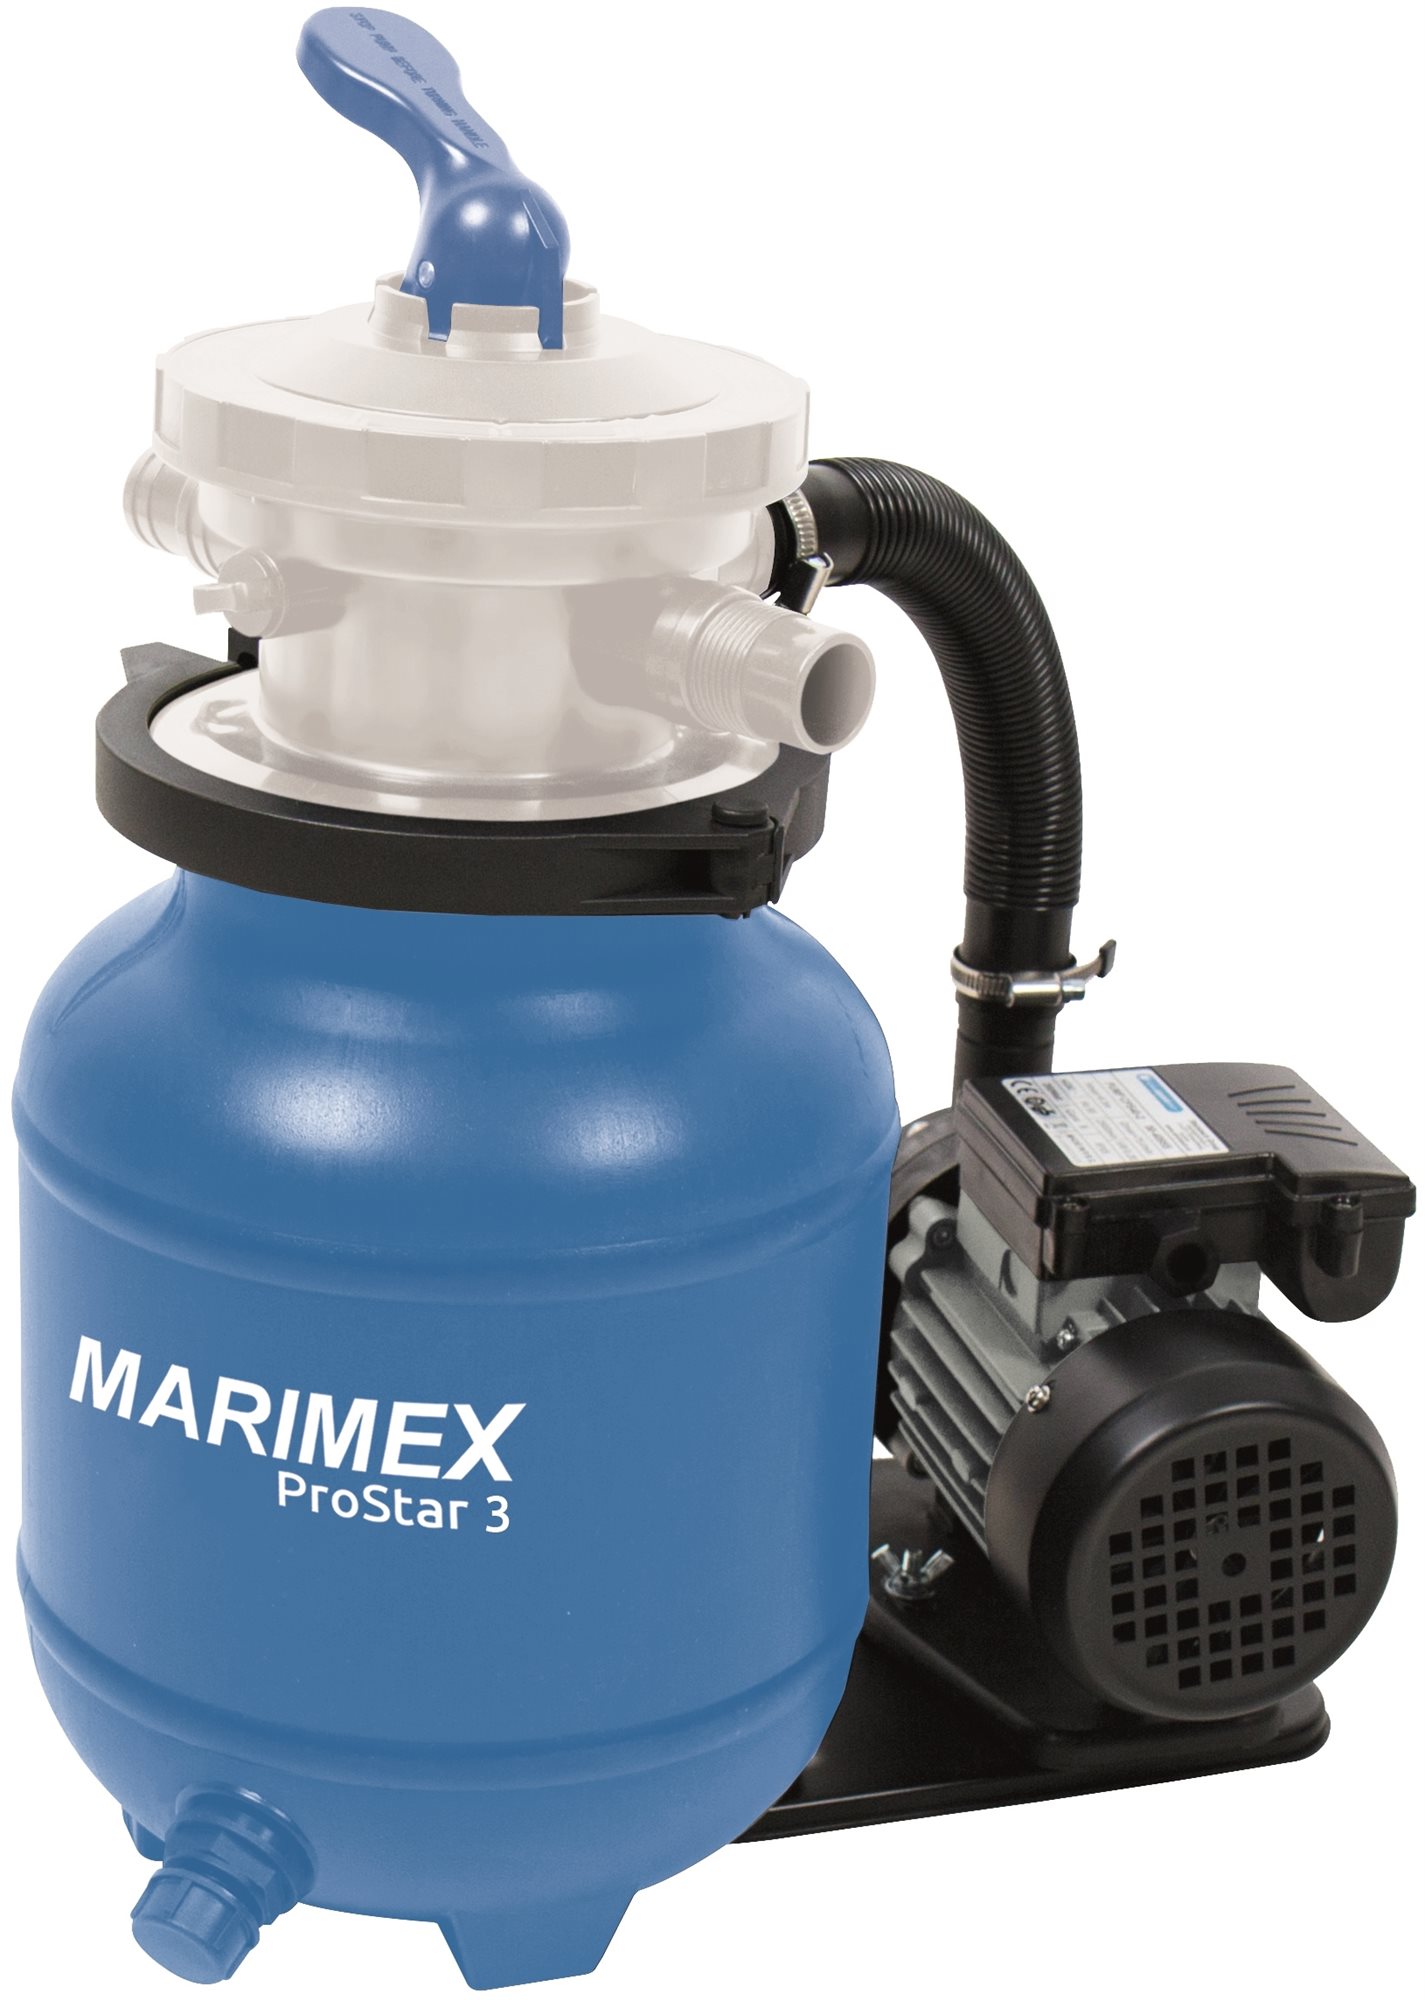 Homokszűrő MARIMEX homokszűrős vízforgató ProStar 3